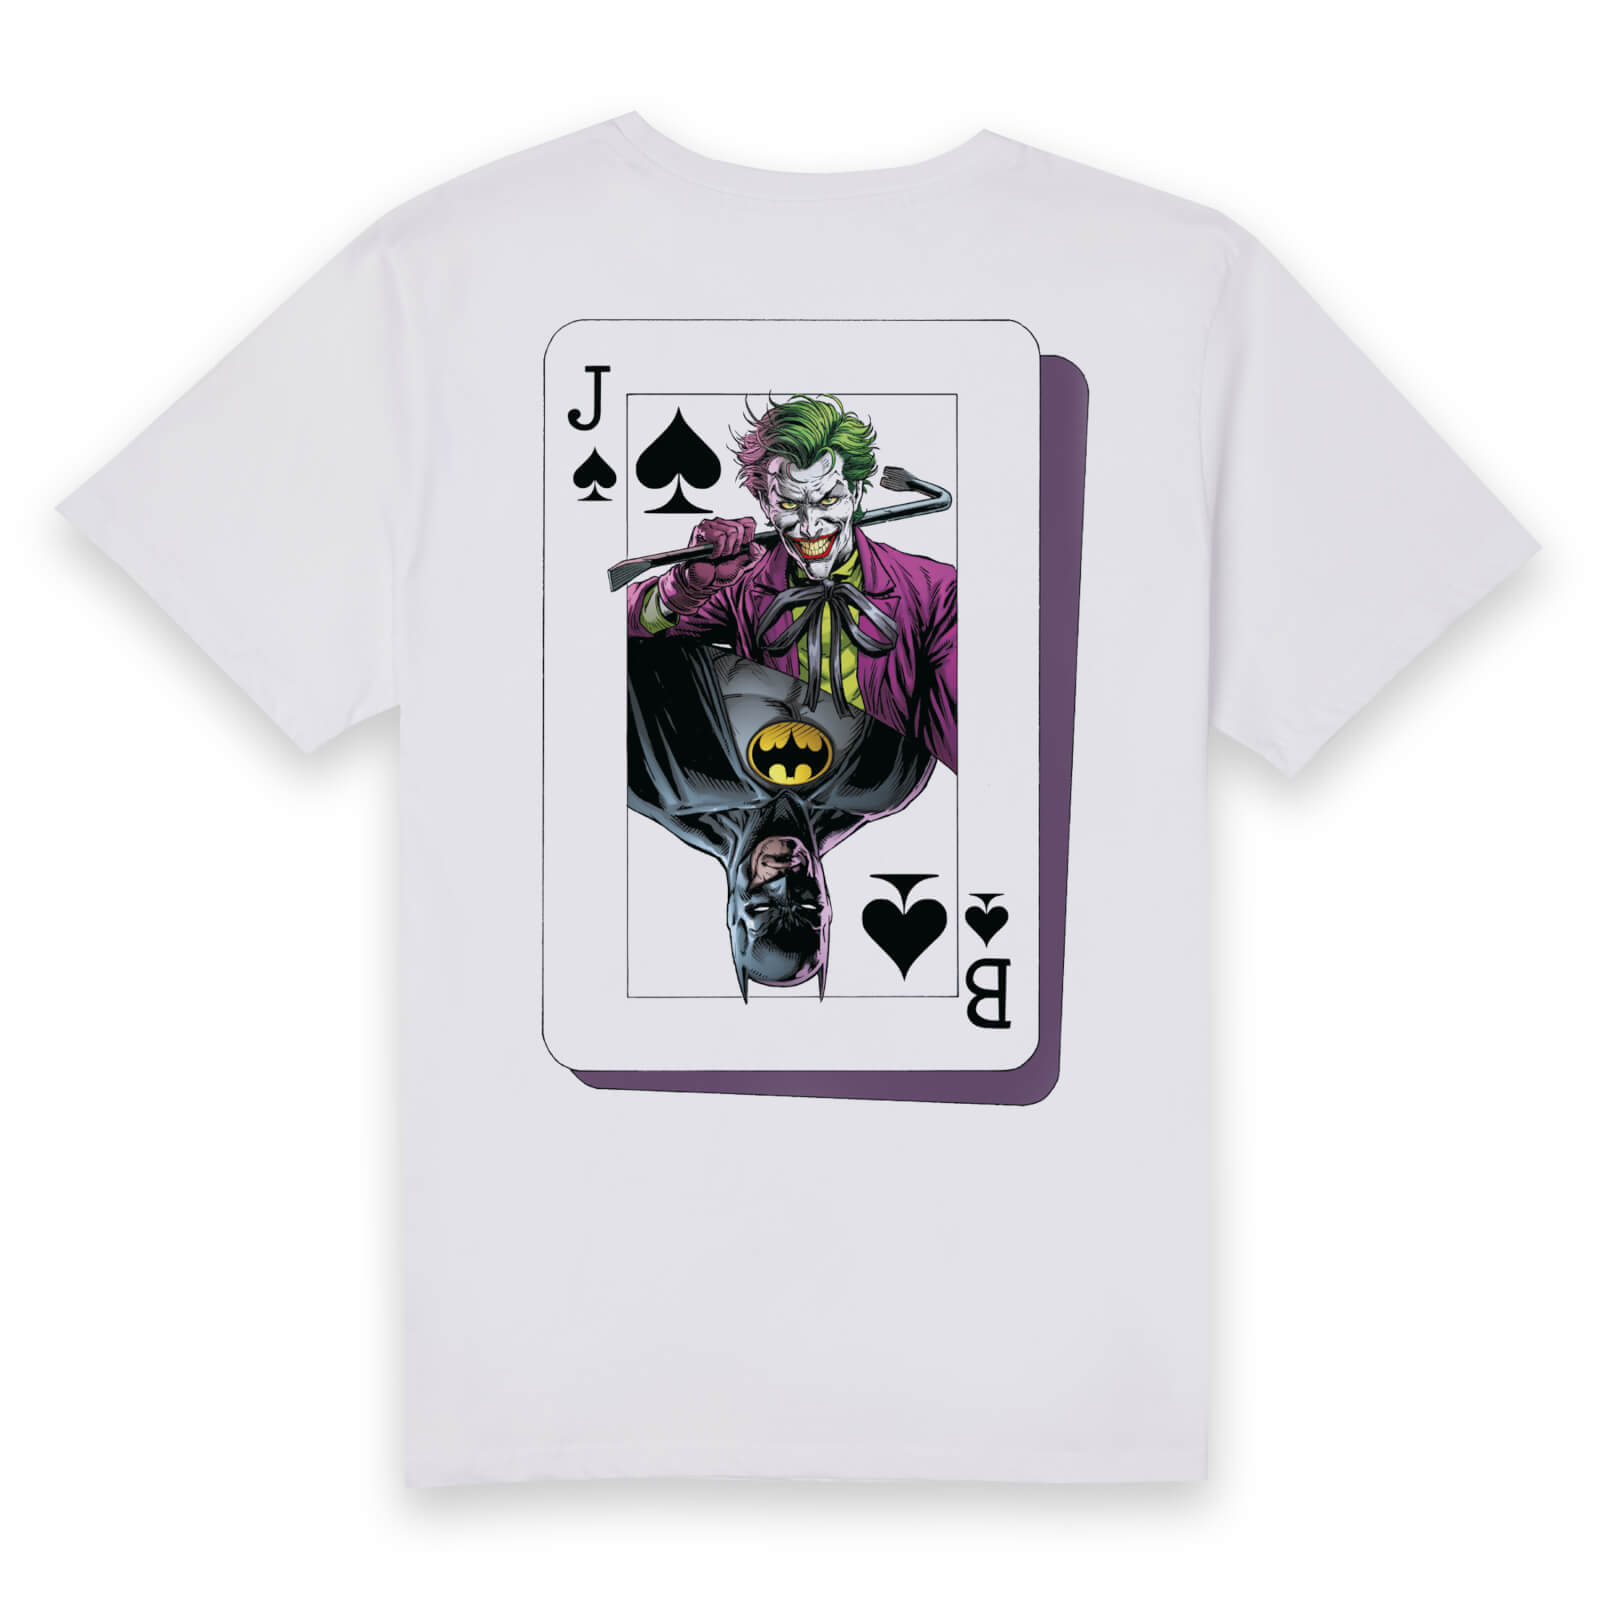 DC The Three Jokers Unisex T-Shirt - White - S - White